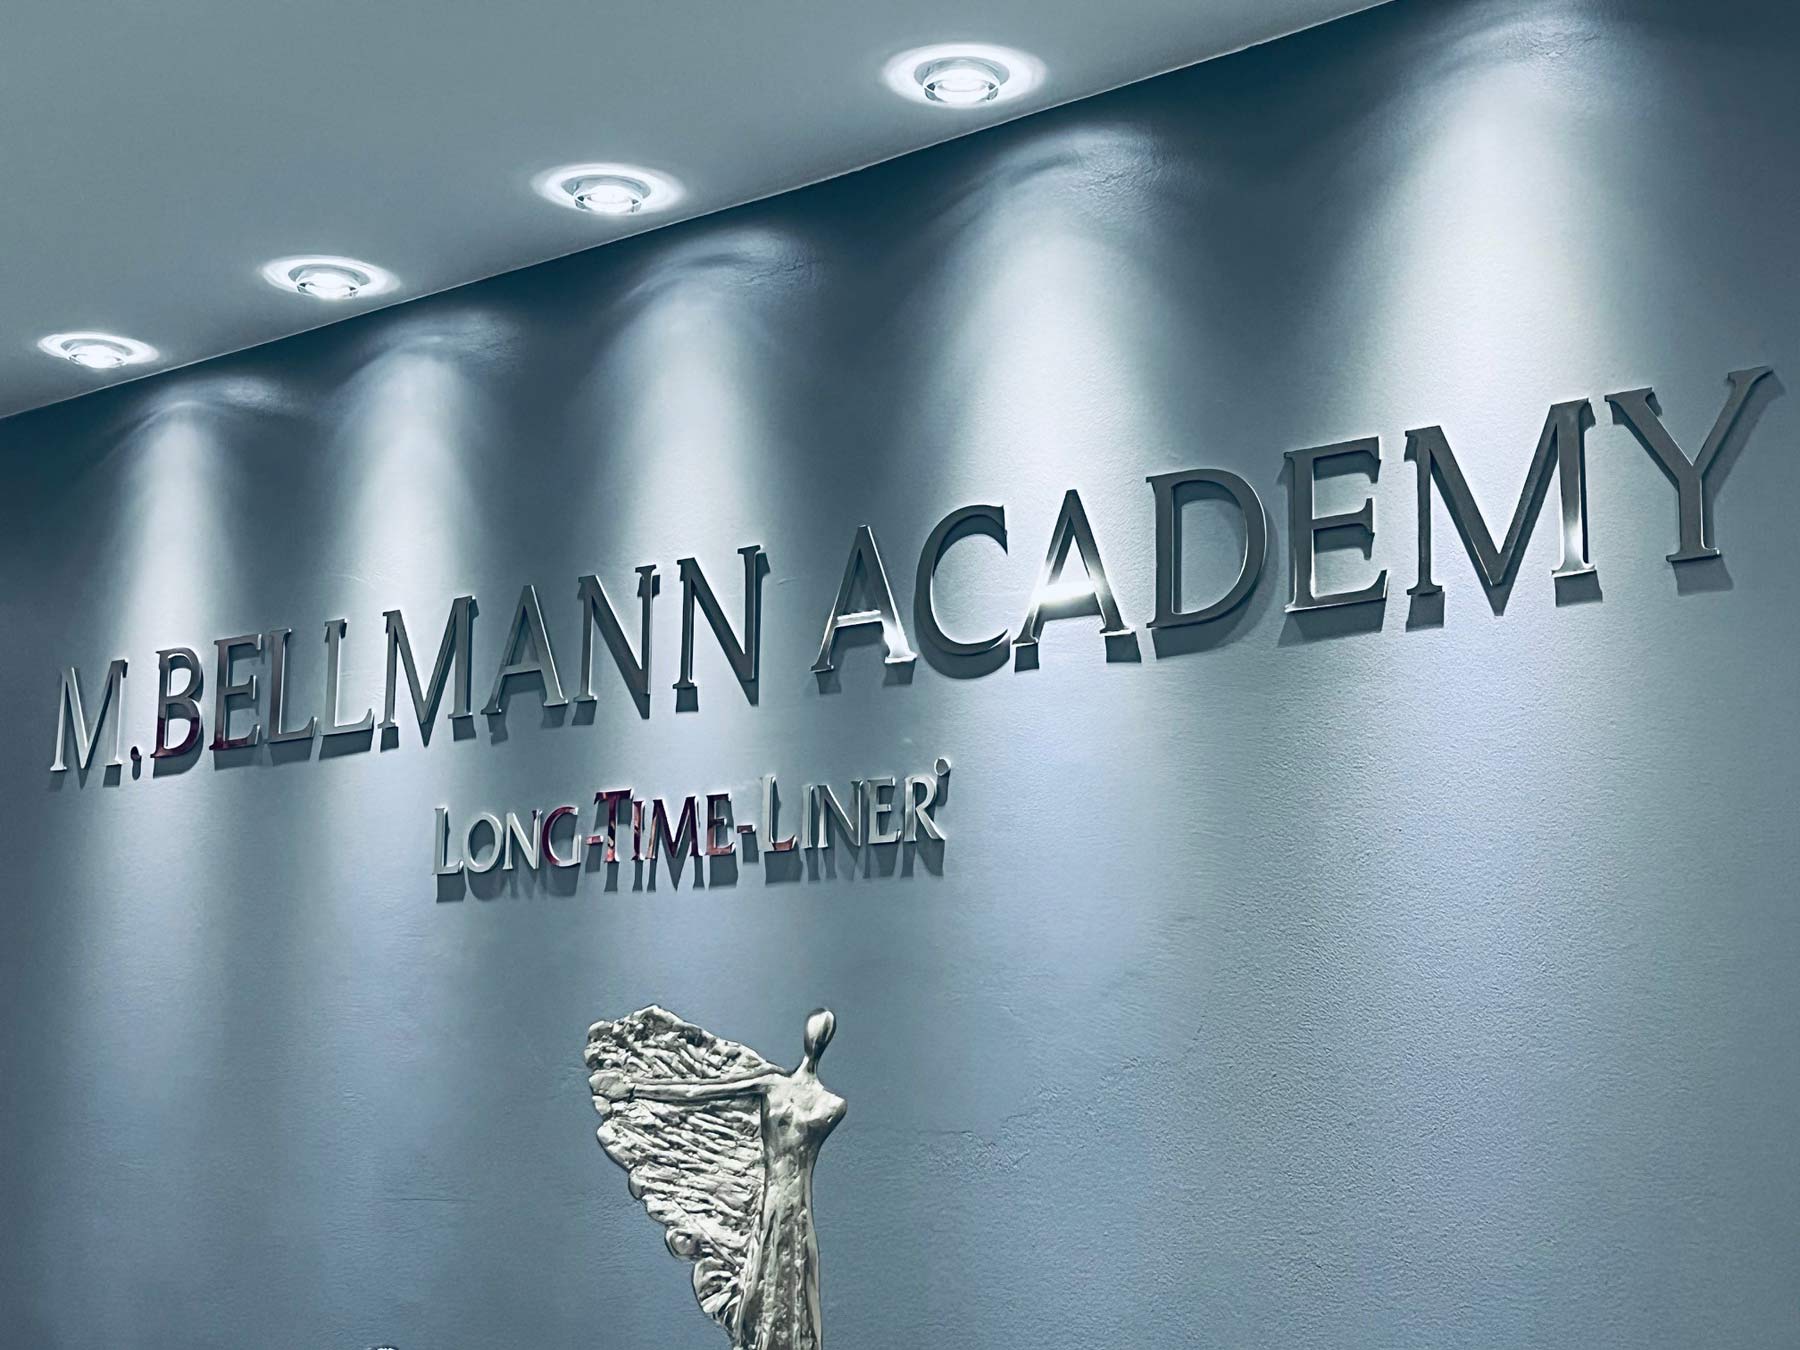 M. Bellmann Academy – Long-Time-Liner®